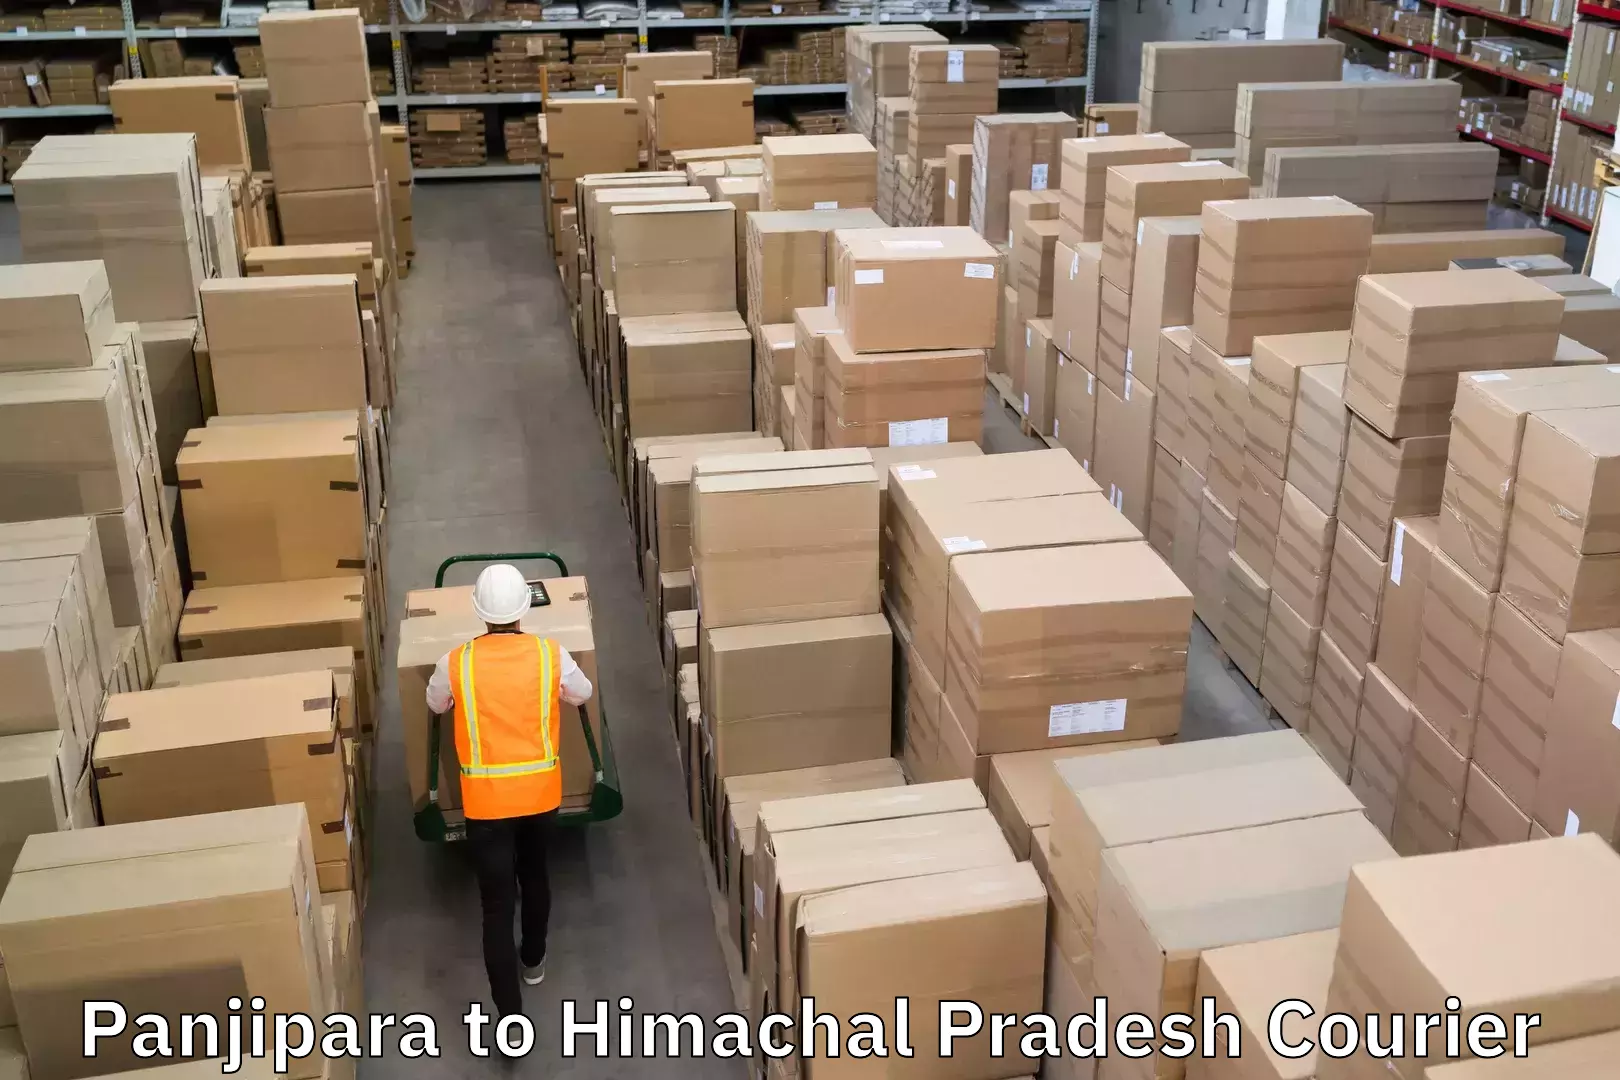 Door-to-door freight service Panjipara to Himachal Pradesh